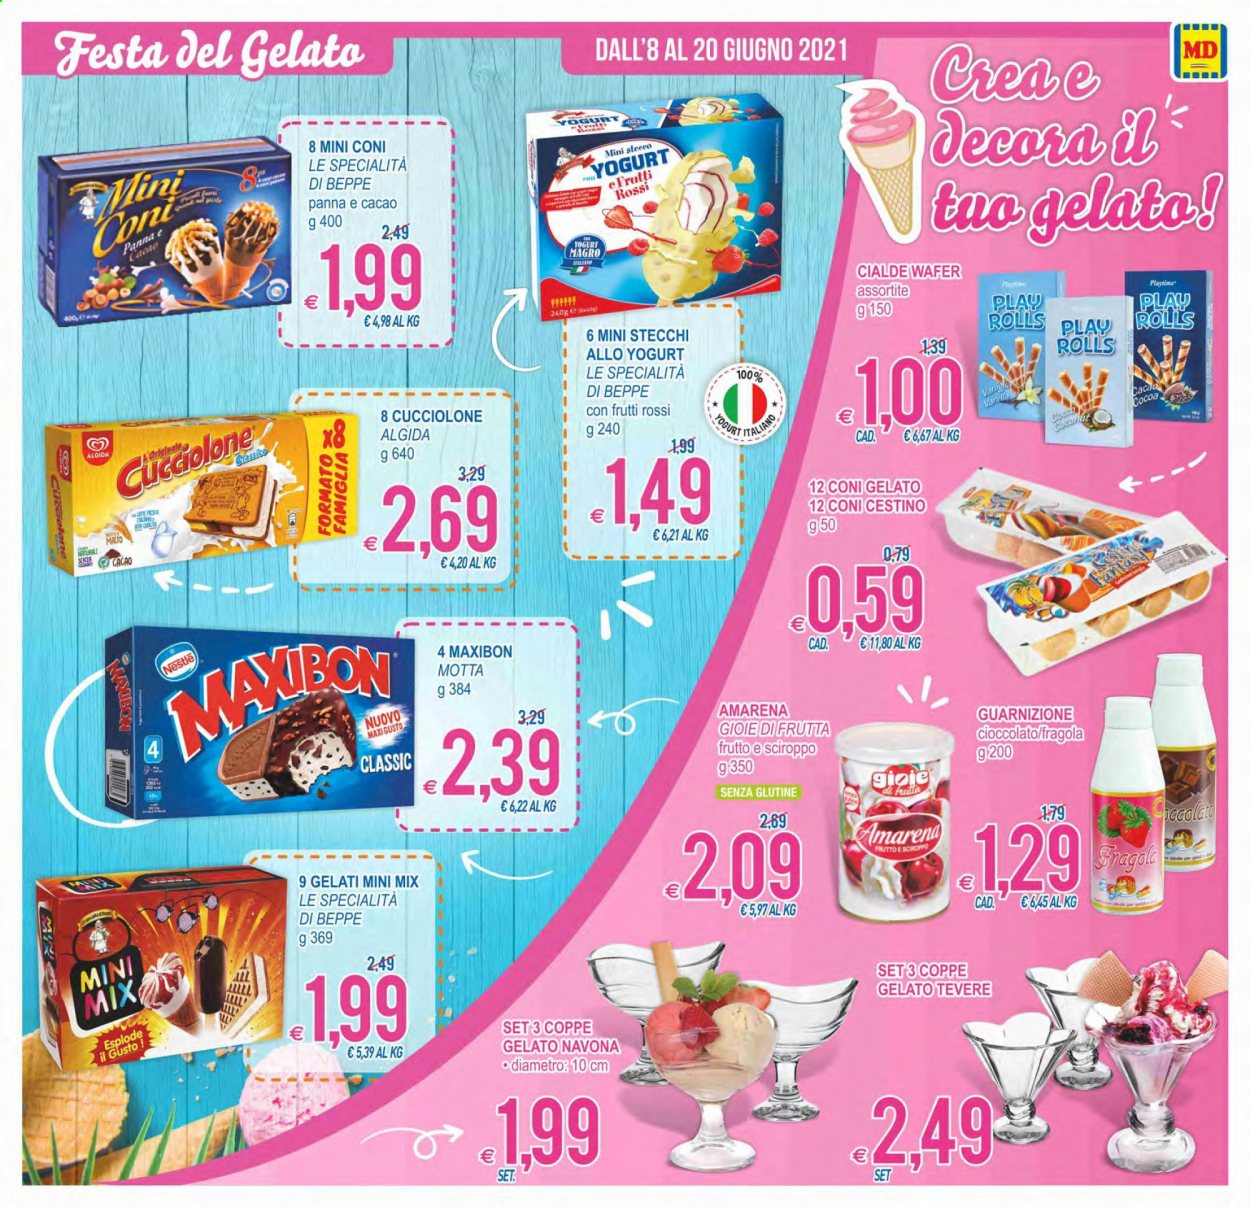 thumbnail - Volantino MD Discount - 8/6/2021 - 20/6/2021 - Prodotti in offerta - Motta, Algida, gelato su stecco, Maxibon, wafer, Nestlé, guarnizione, cestino. Pagina 3.